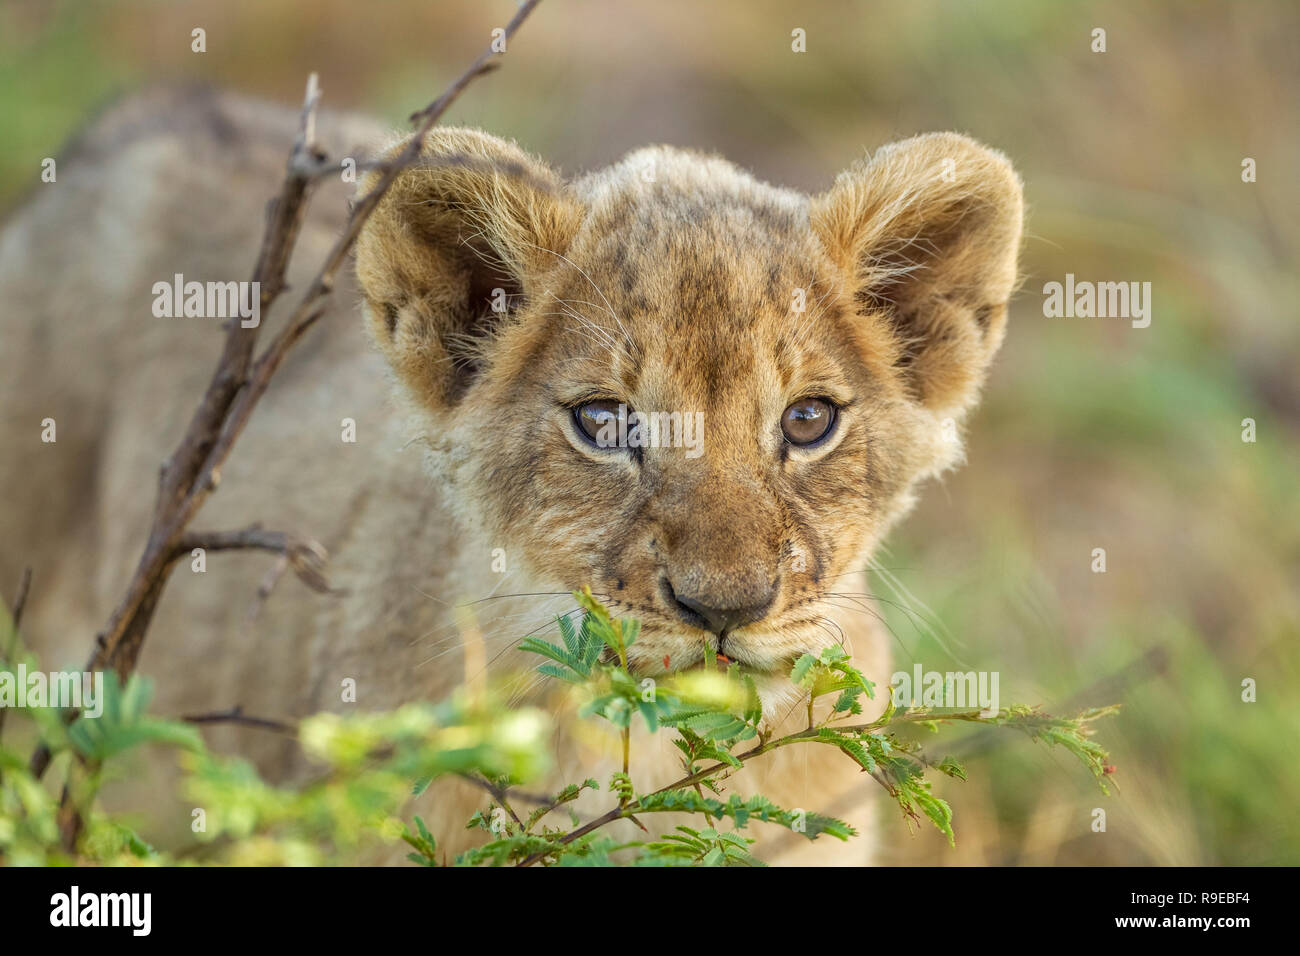 Mignon Petit Lion De Bebe Qui Se Cache Derriere Un Buisson Et Regarde Curieusement A La Camera Photo Stock Alamy